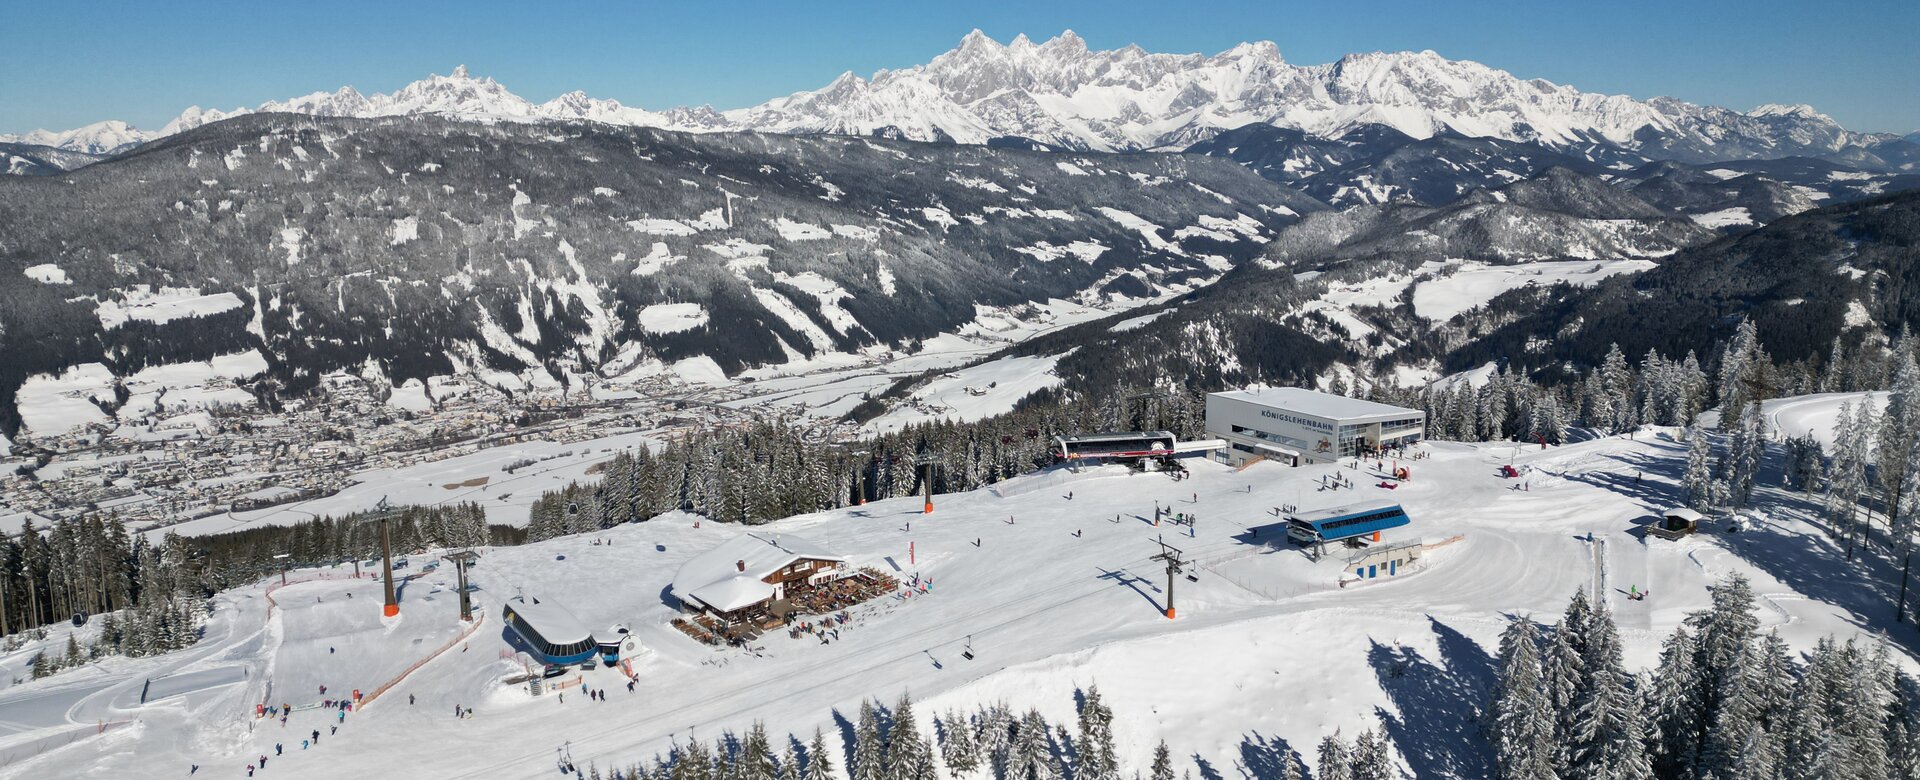 Eine Gondelstation, zwei Sesselliftstationen und eine Skihütte von oben und im Tal unten sind viele Häuser zu sehen